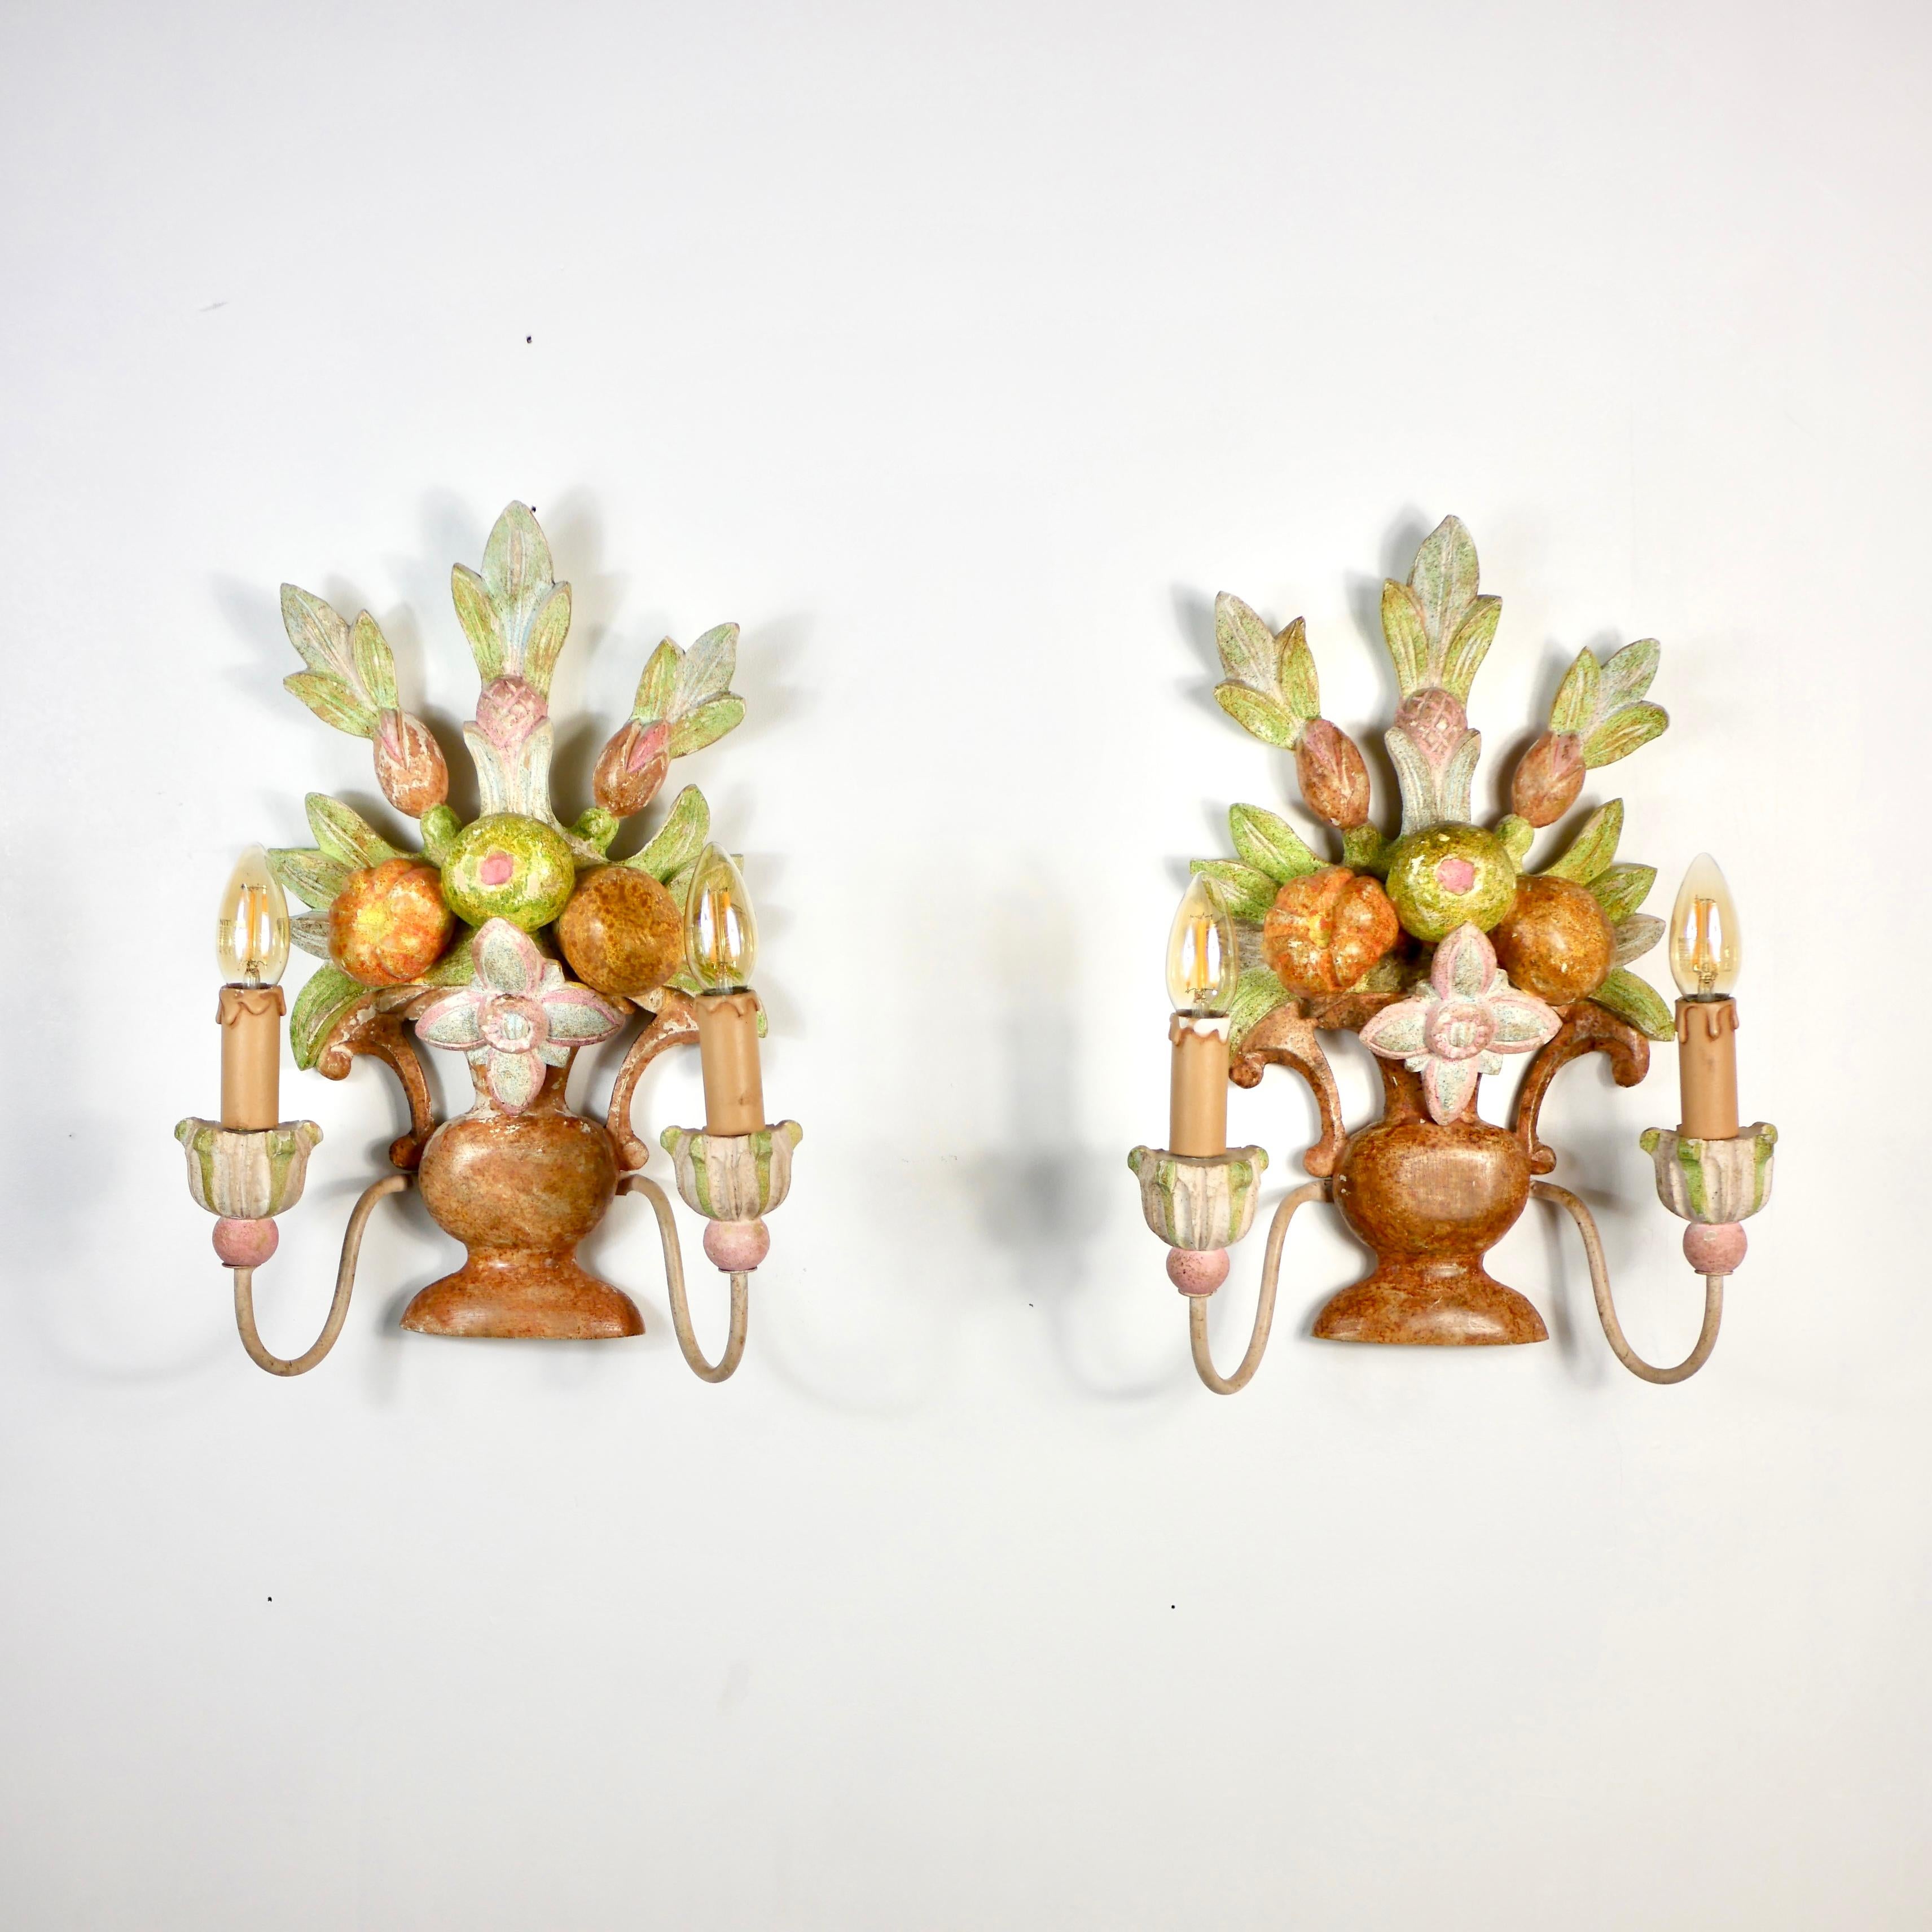 Schönes Paar handgeschnitzter Holzleuchter aus Italien vom Anfang des 20. Jahrhunderts, die Blumensträuße, Blätter und Früchte im Stil von Maison Jansen darstellen.
Jede Leuchte ist handbemalt und hat zwei 